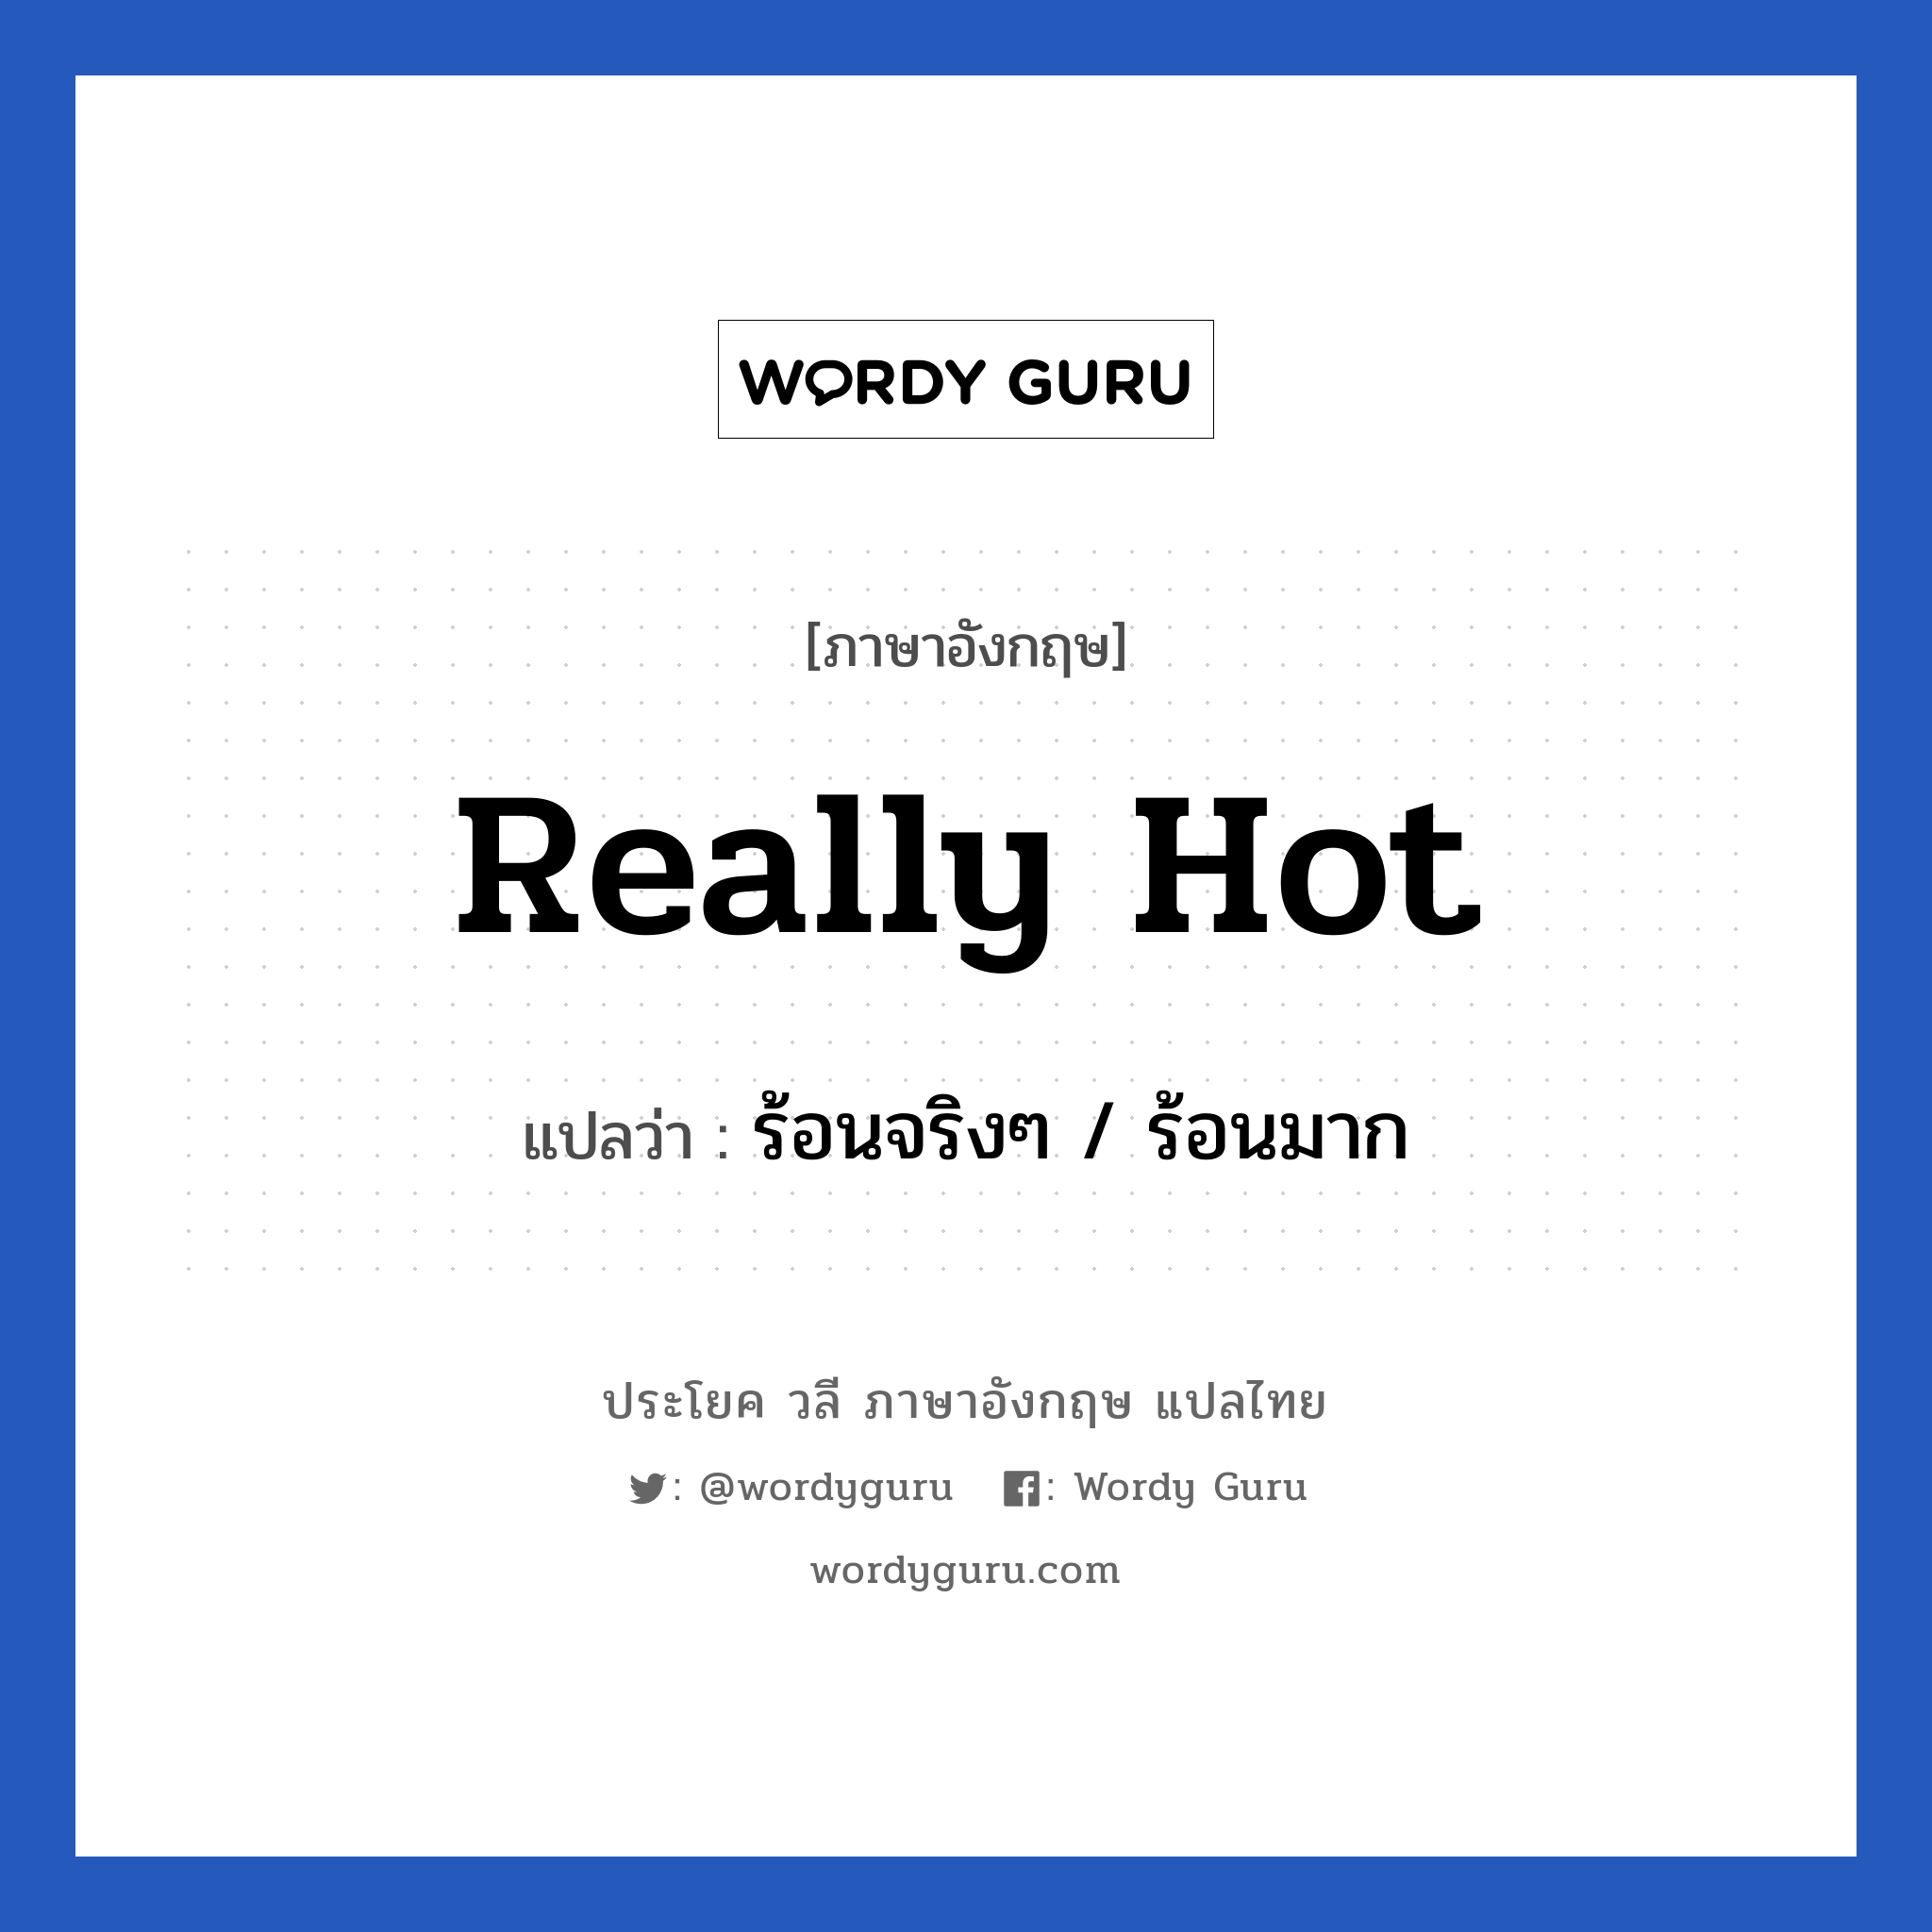 ร้อนจริงๆ / ร้อนมาก ภาษาอังกฤษ?, วลีภาษาอังกฤษ ร้อนจริงๆ / ร้อนมาก แปลว่า Really hot